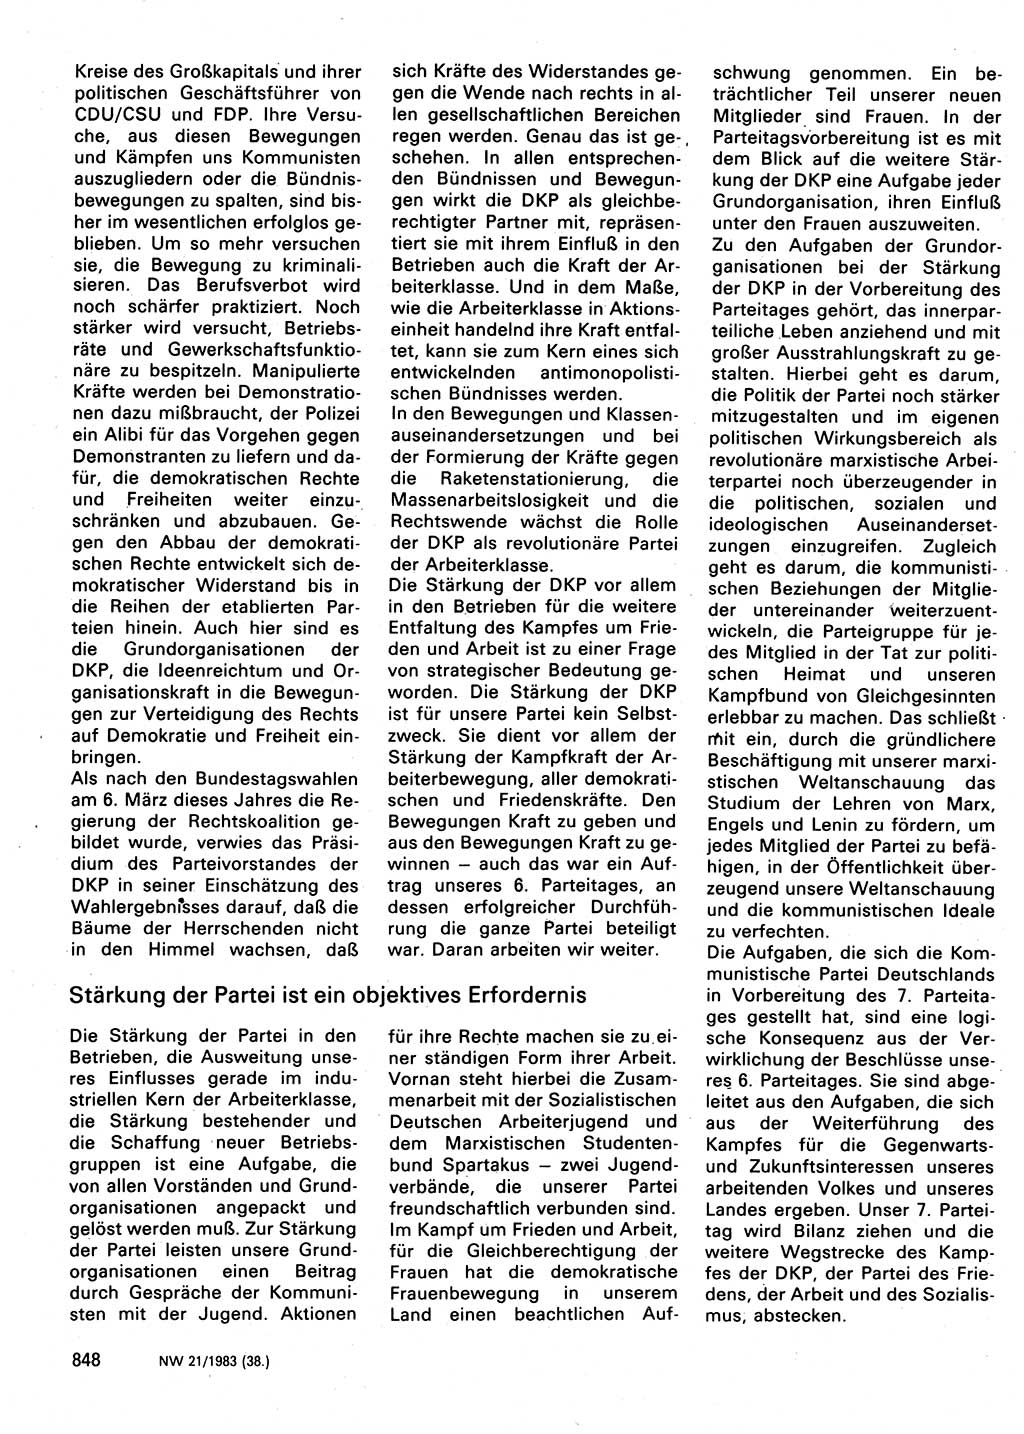 Neuer Weg (NW), Organ des Zentralkomitees (ZK) der SED (Sozialistische Einheitspartei Deutschlands) für Fragen des Parteilebens, 38. Jahrgang [Deutsche Demokratische Republik (DDR)] 1983, Seite 848 (NW ZK SED DDR 1983, S. 848)